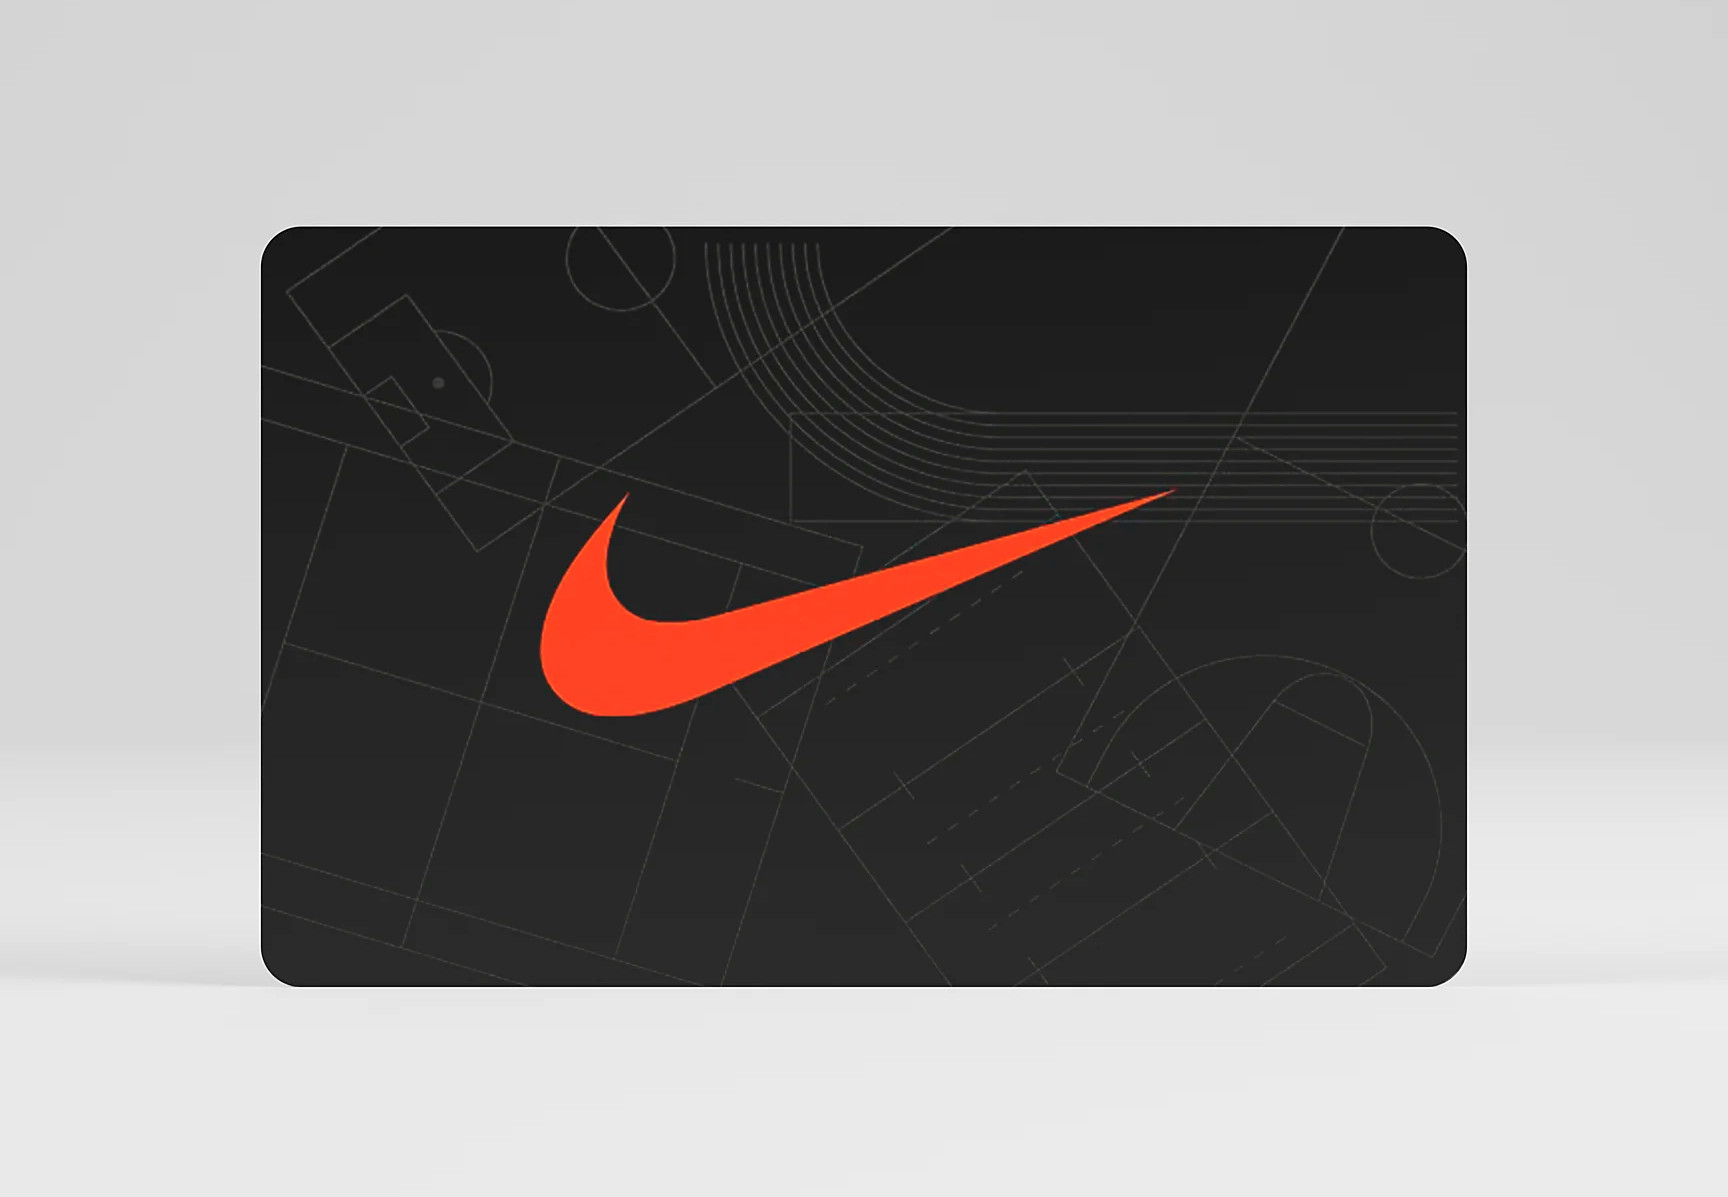 Nike $25 Gift Card US